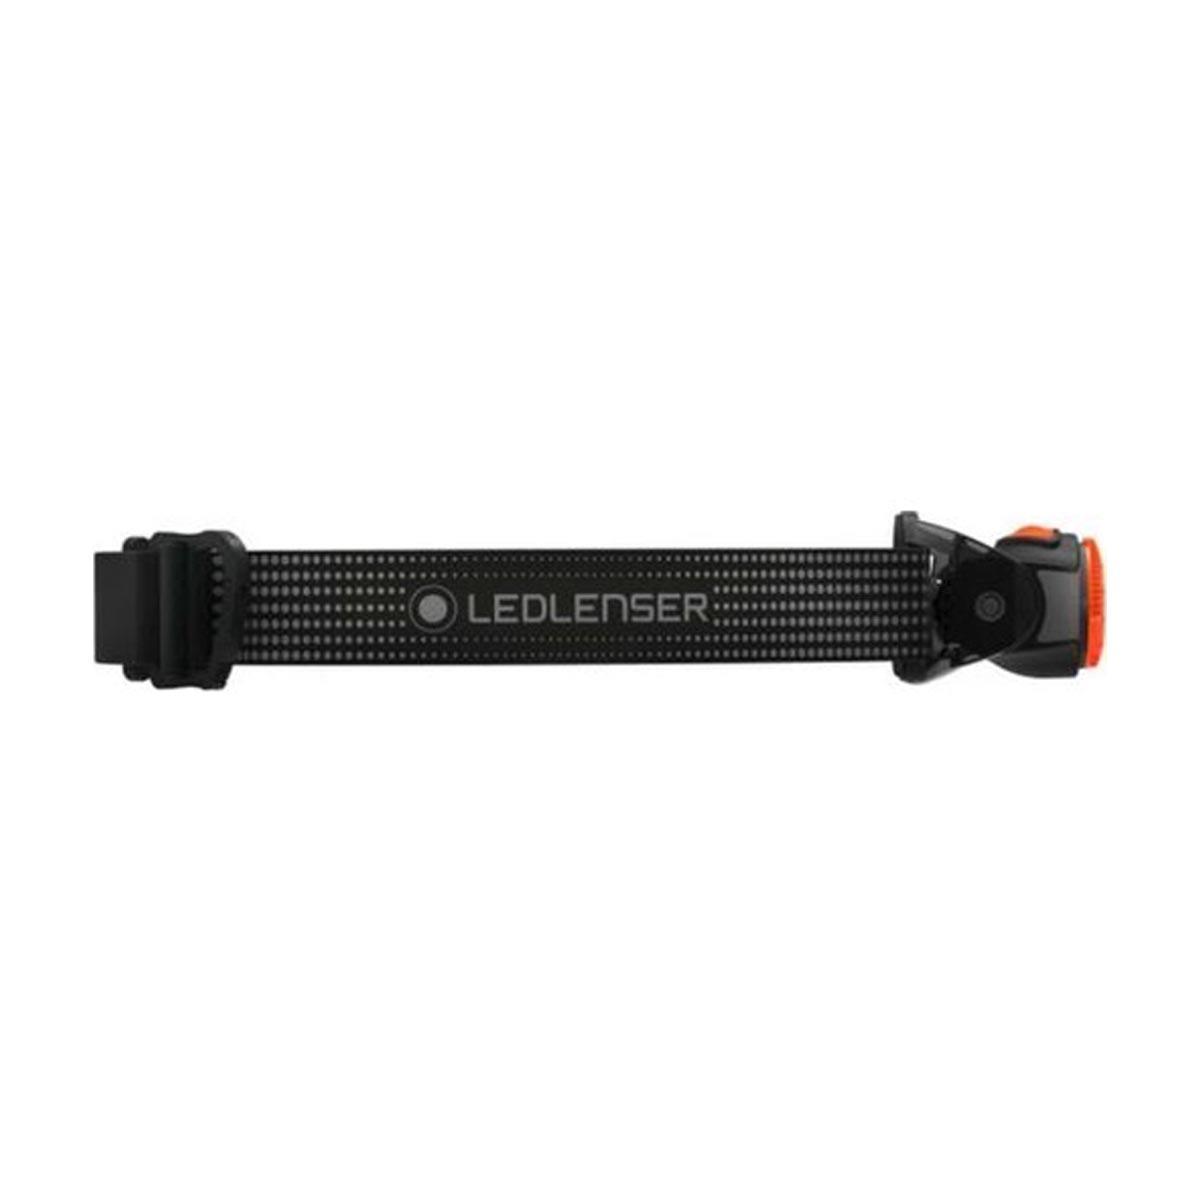  LedLenser MH3 BLACK-ORANGE Fener LED502148